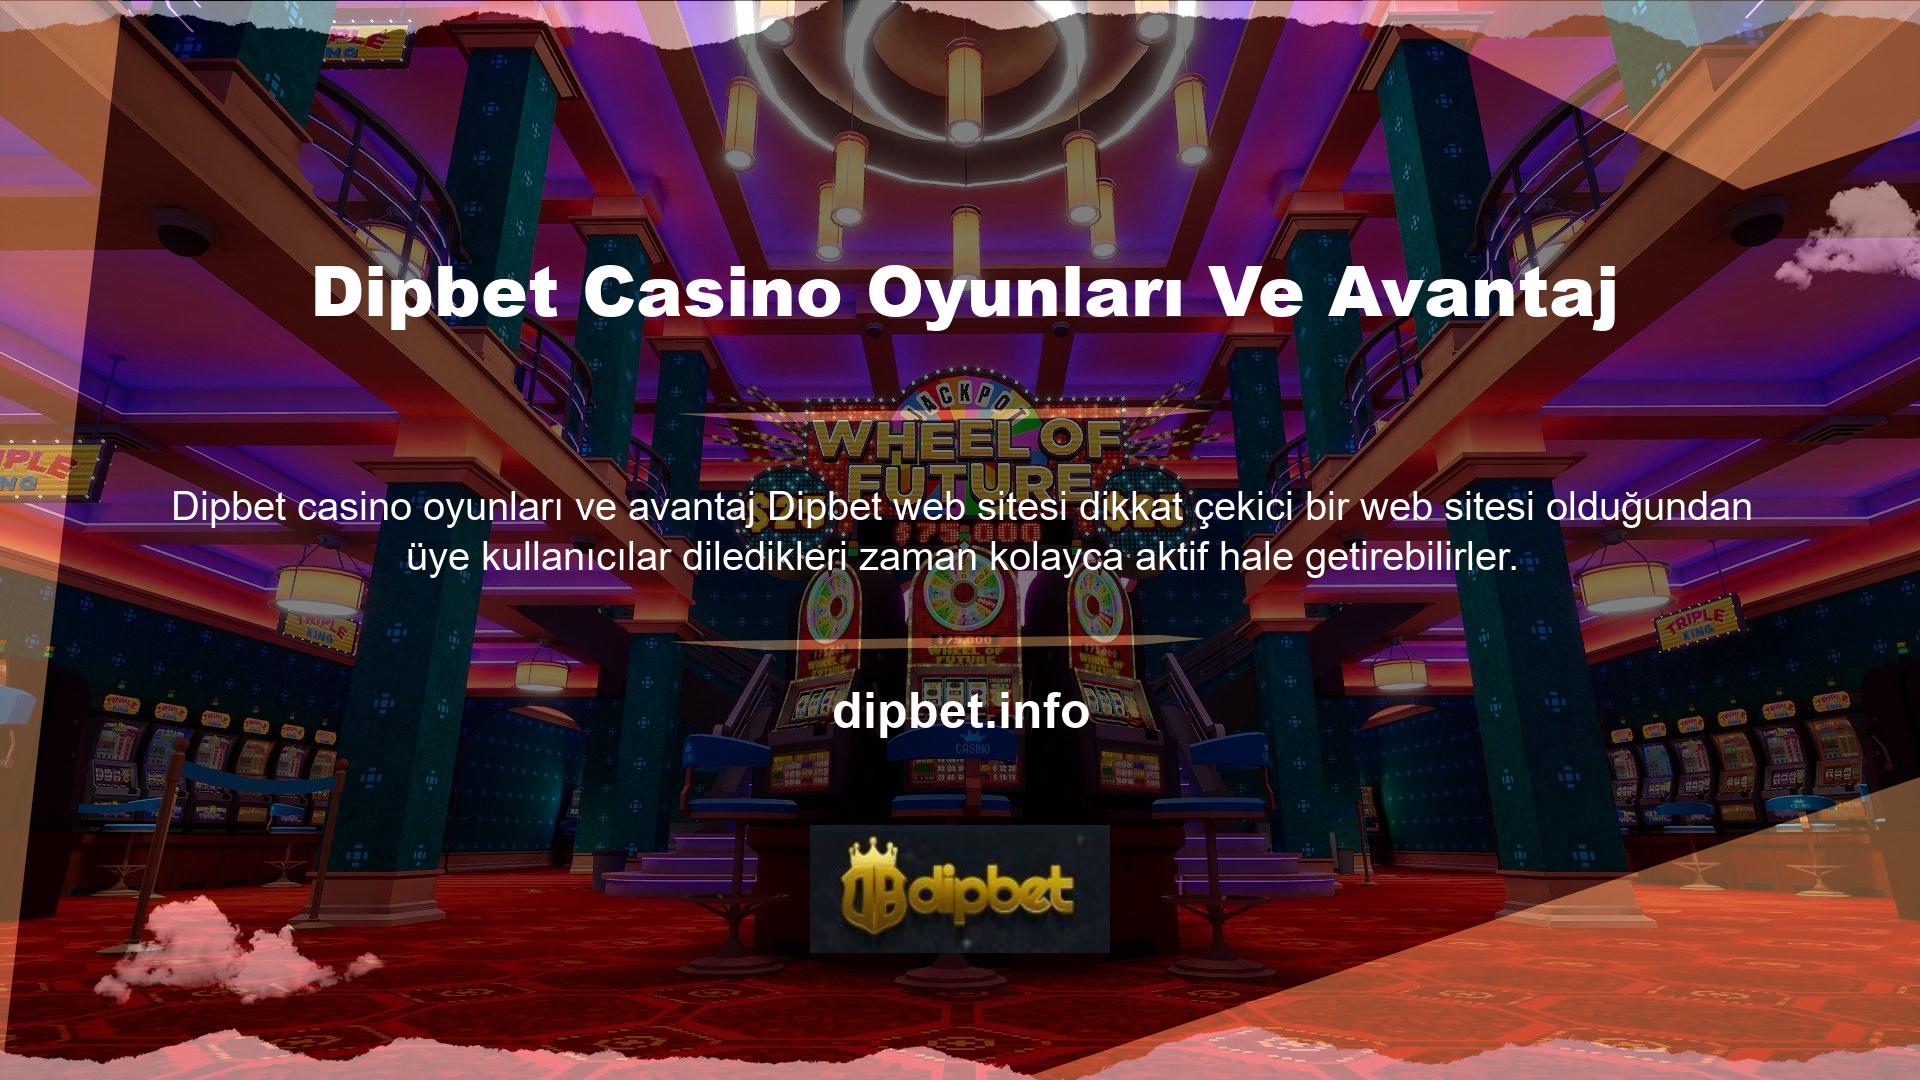 Sitenin yönetimini yönetenler, casino sitesine üye olan kullanıcılara internet erişimi olan tüm ortamlarda avantajlar sunmak istemektedir